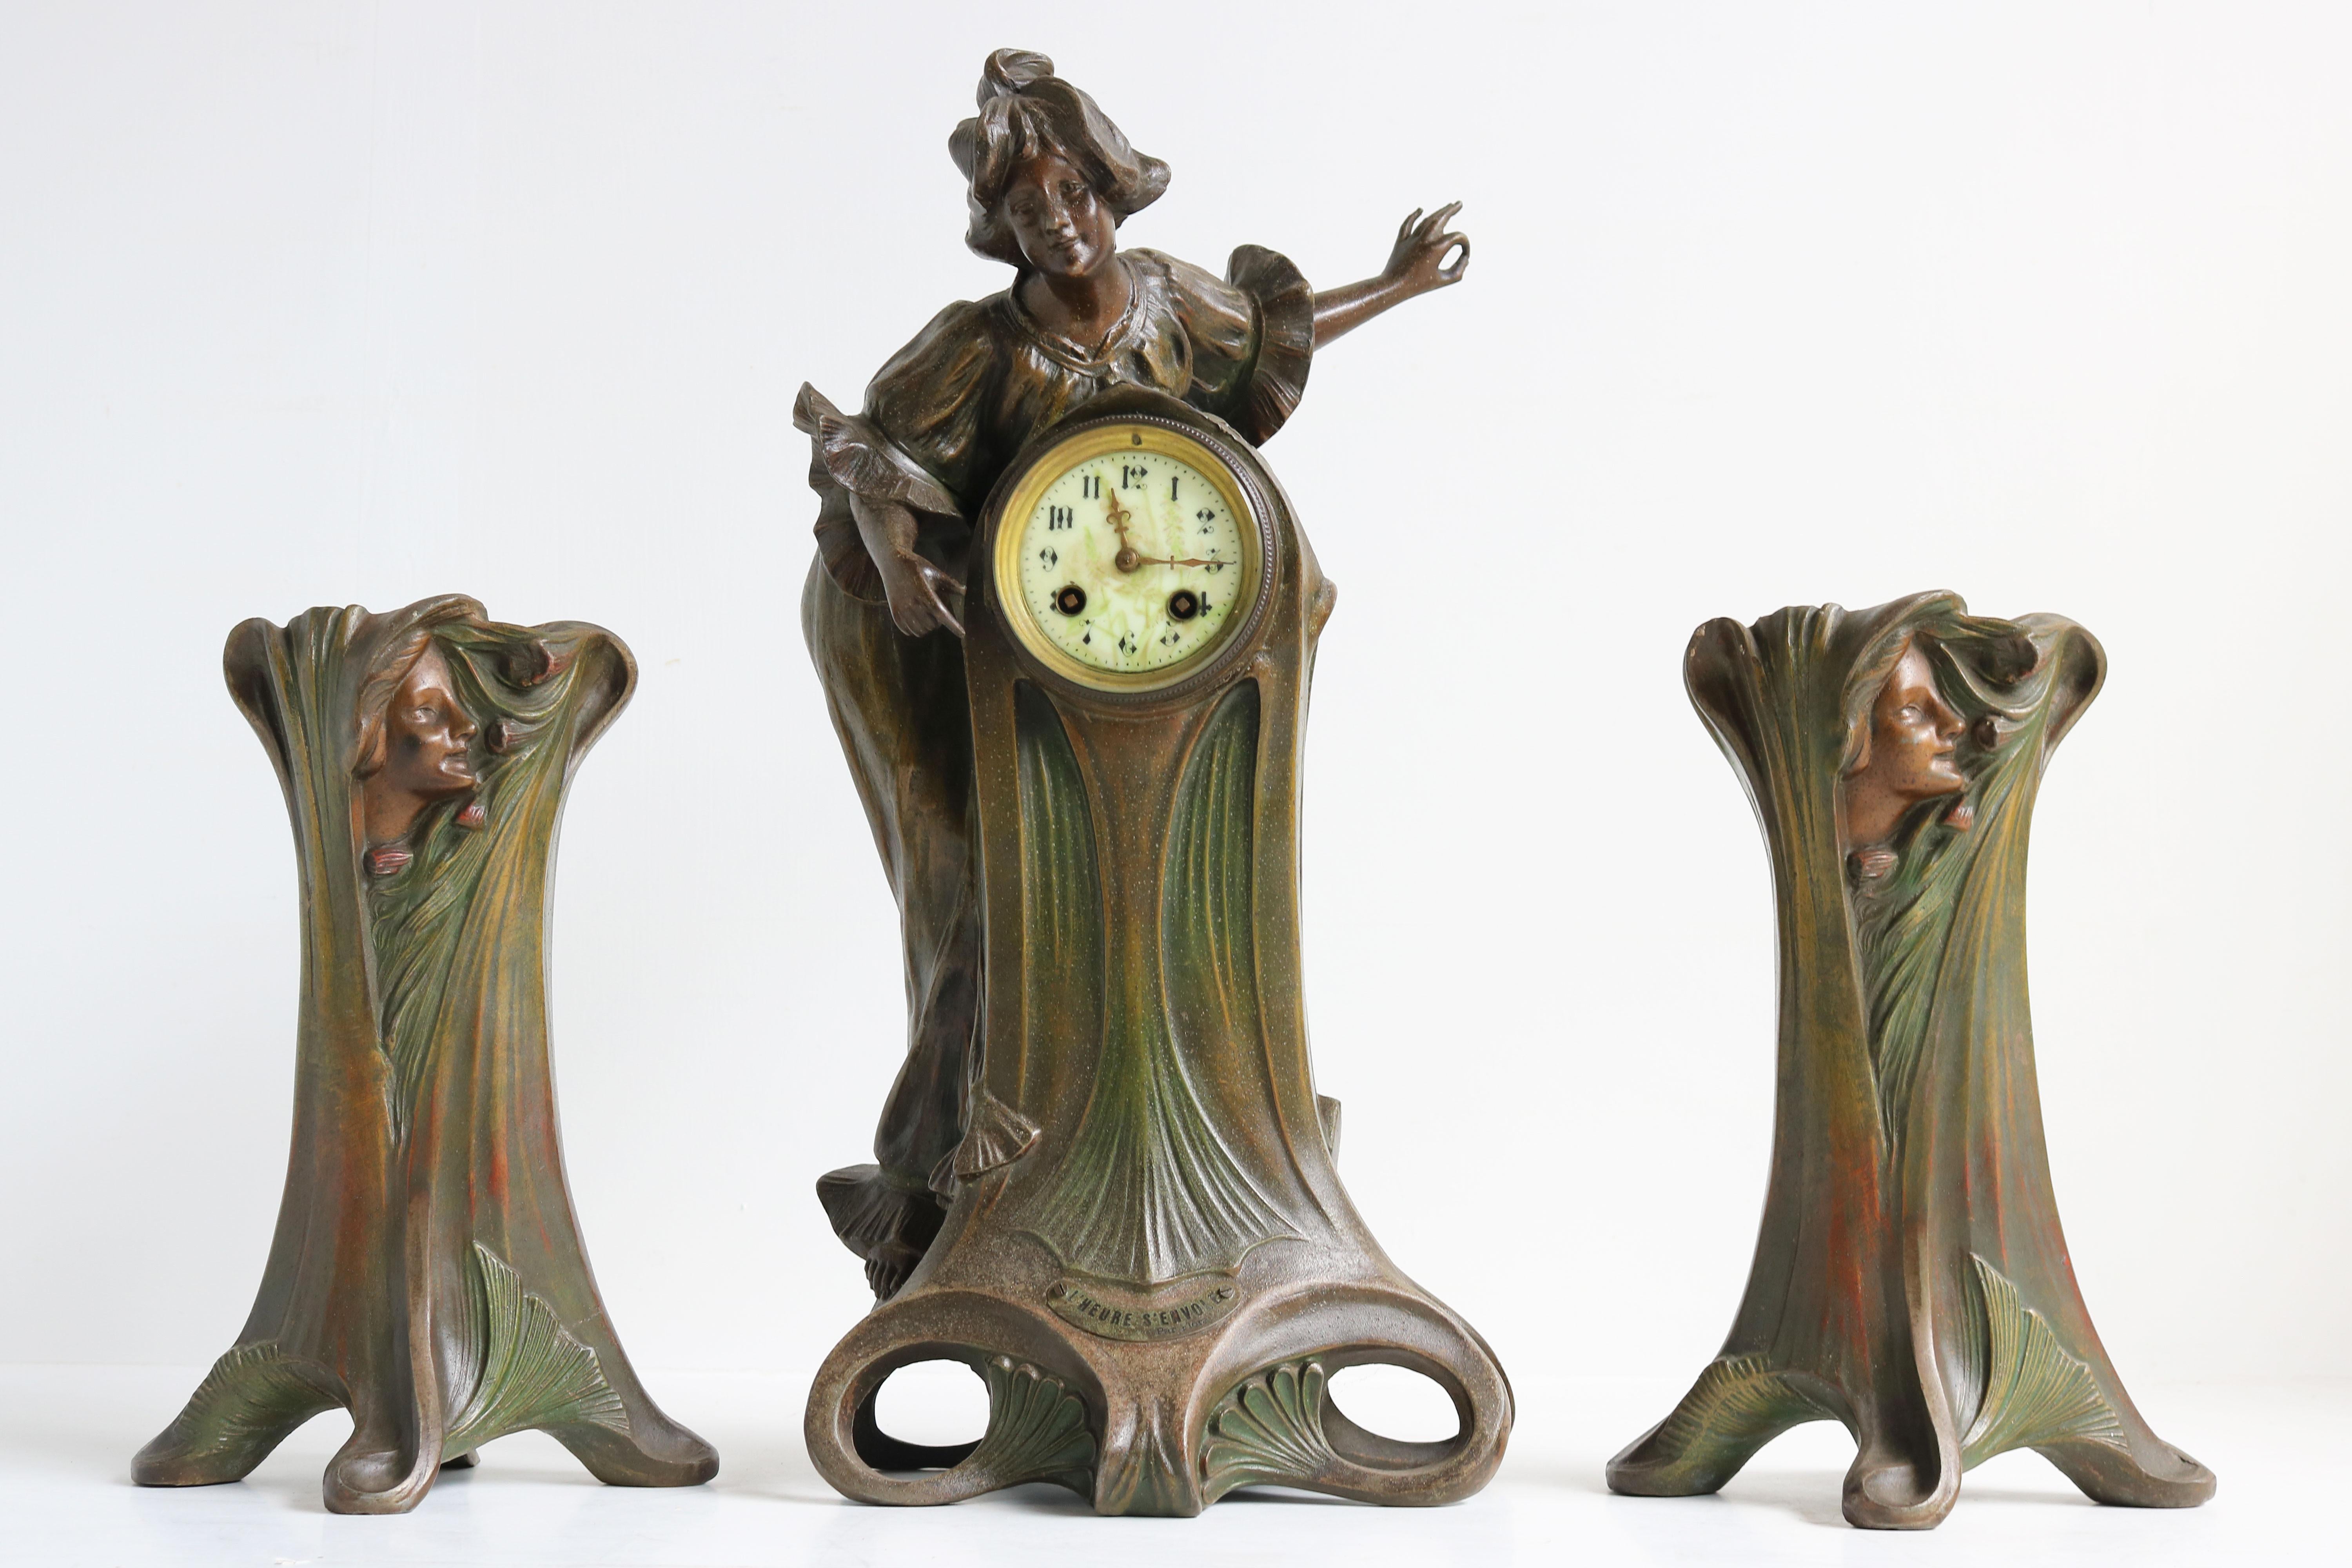 Wunderschönes Jugendstil-Uhrenset aus den 1890er Jahren des italienischen Künstlers Francesco Flora, hergestellt in Paris, Frankreich. 
Francesco Flora ist bekannt für seine wunderschönen weiblichen Jugendstilskulpturen, und dieses Uhrenset ist ein